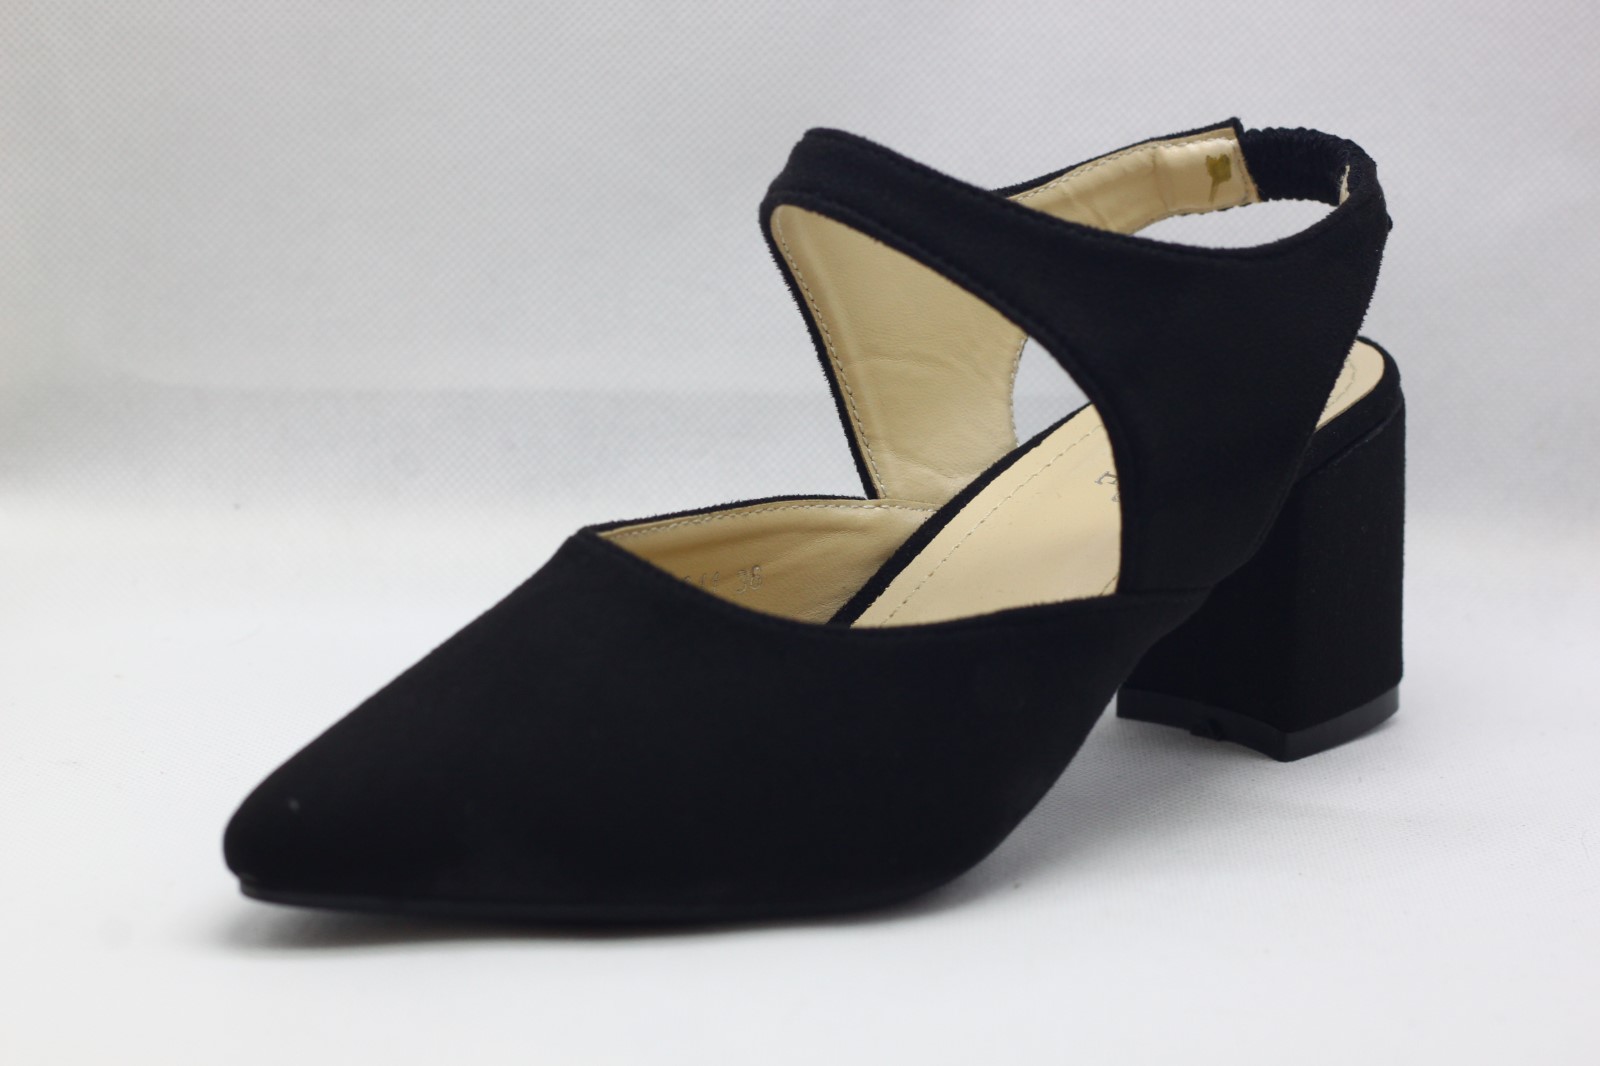 1.5 inch heels